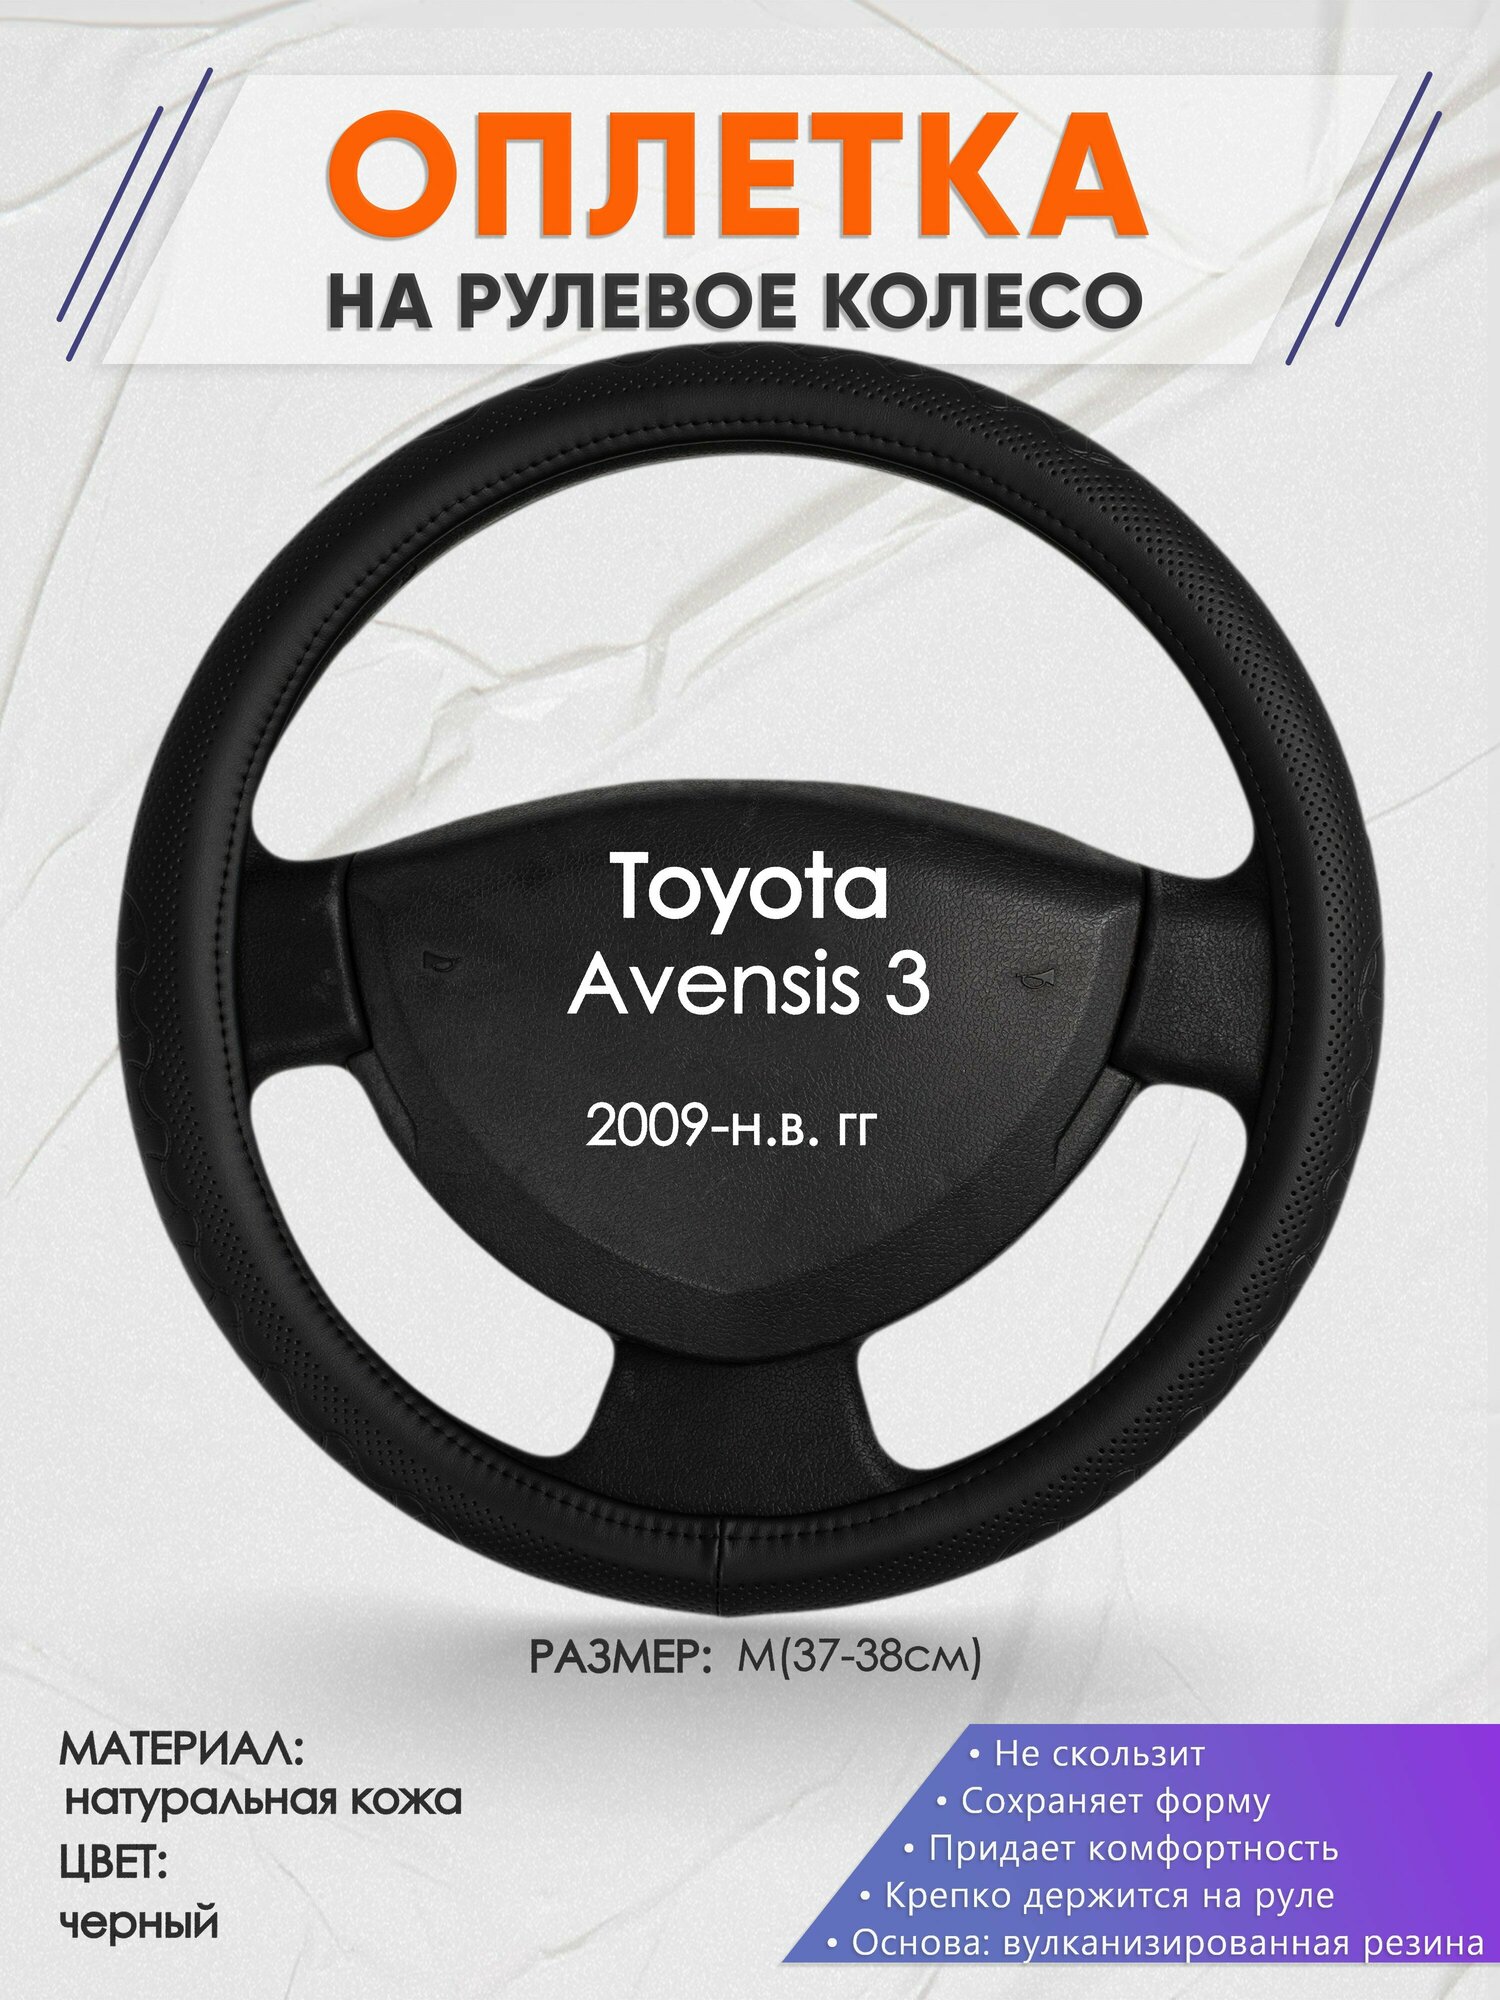 Оплетка на руль для Toyota Avensis 3(Тойота Авенсис 3) 2009-н. в, M(37-38см), Натуральная кожа 25